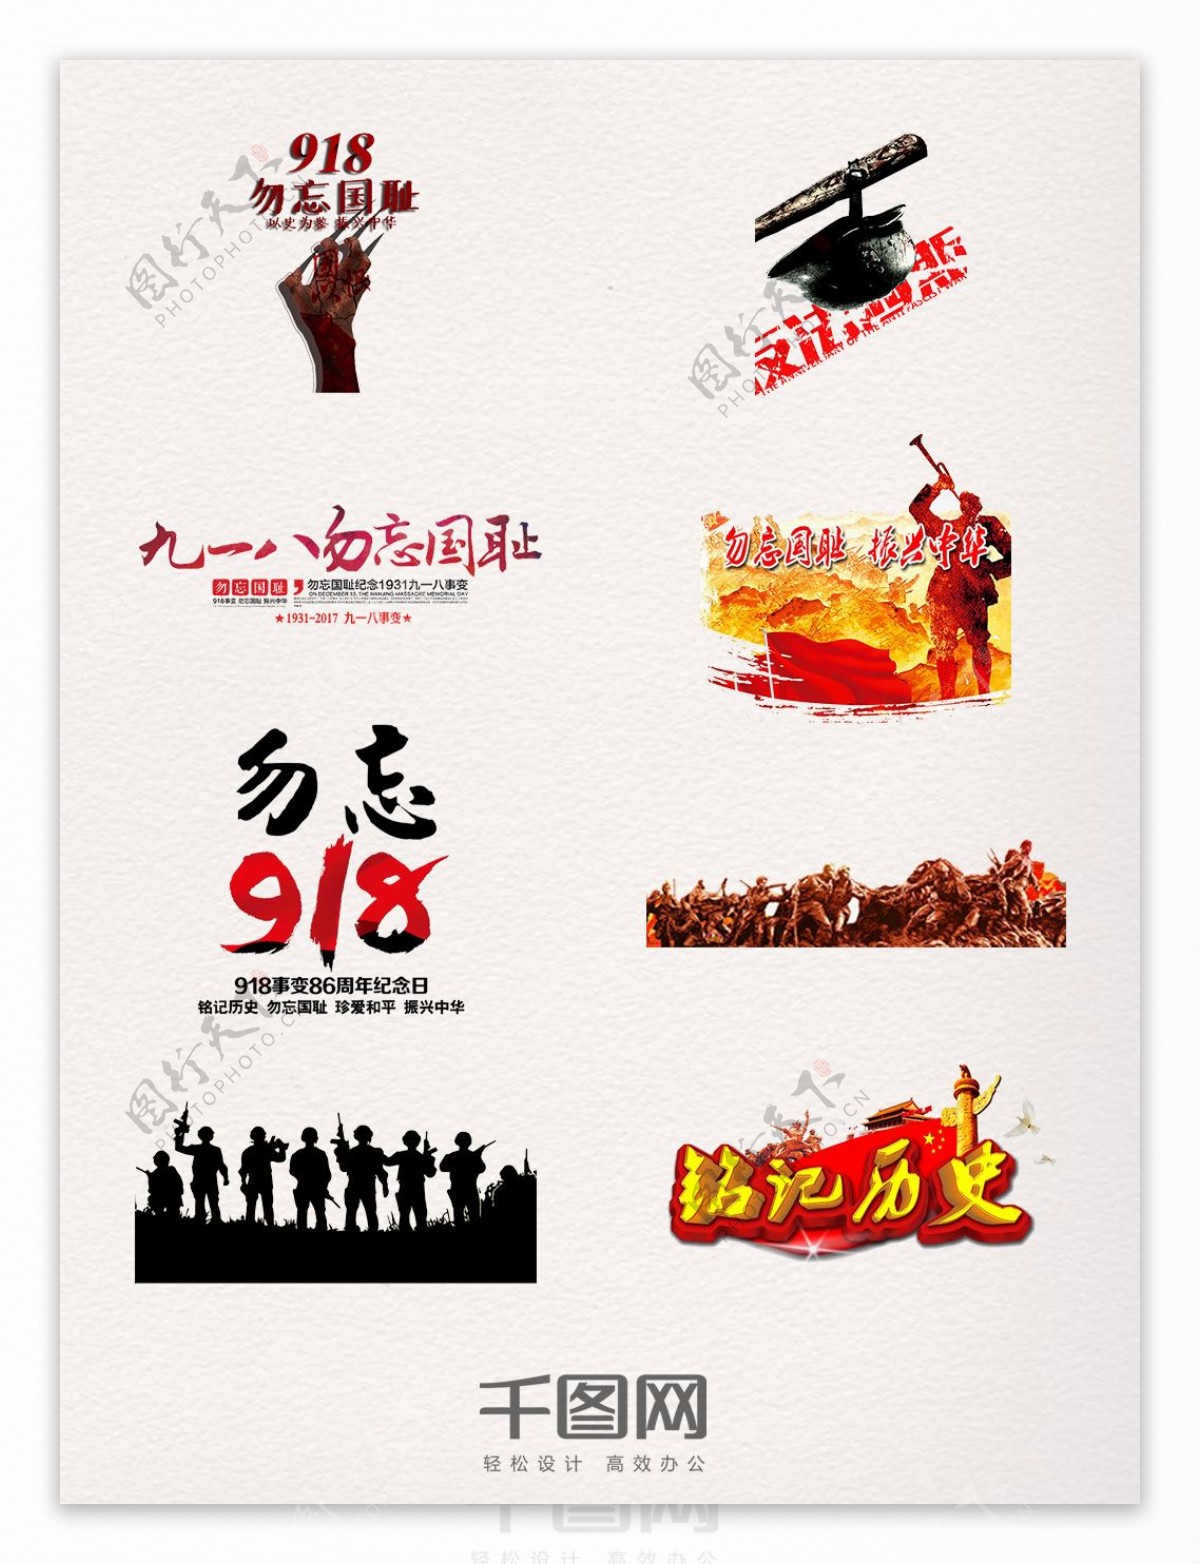 一组纪念南京大屠杀遇难同胞红色元素